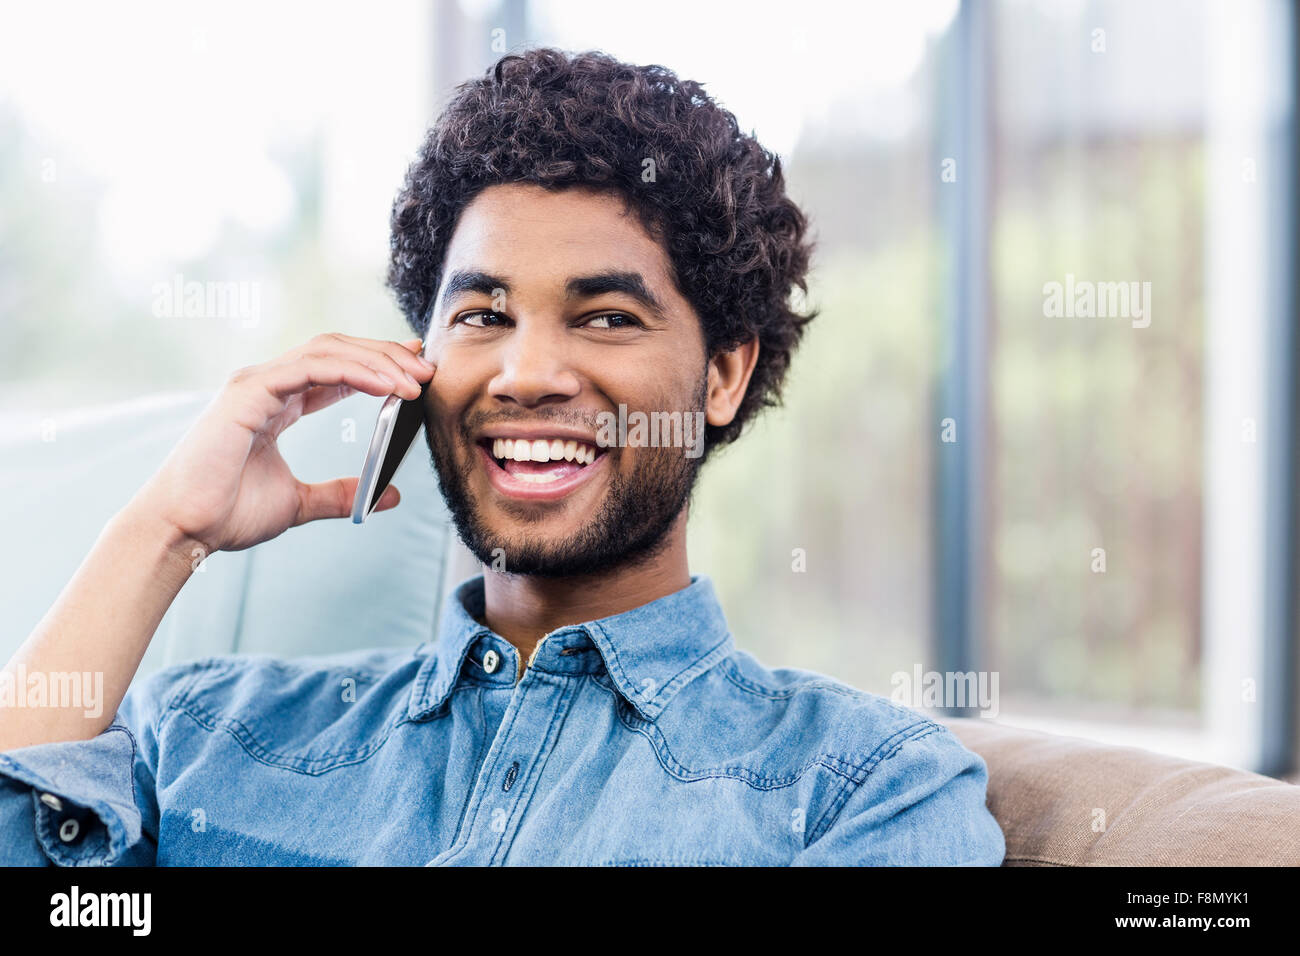 Handsome smiling man sur appel téléphonique Banque D'Images